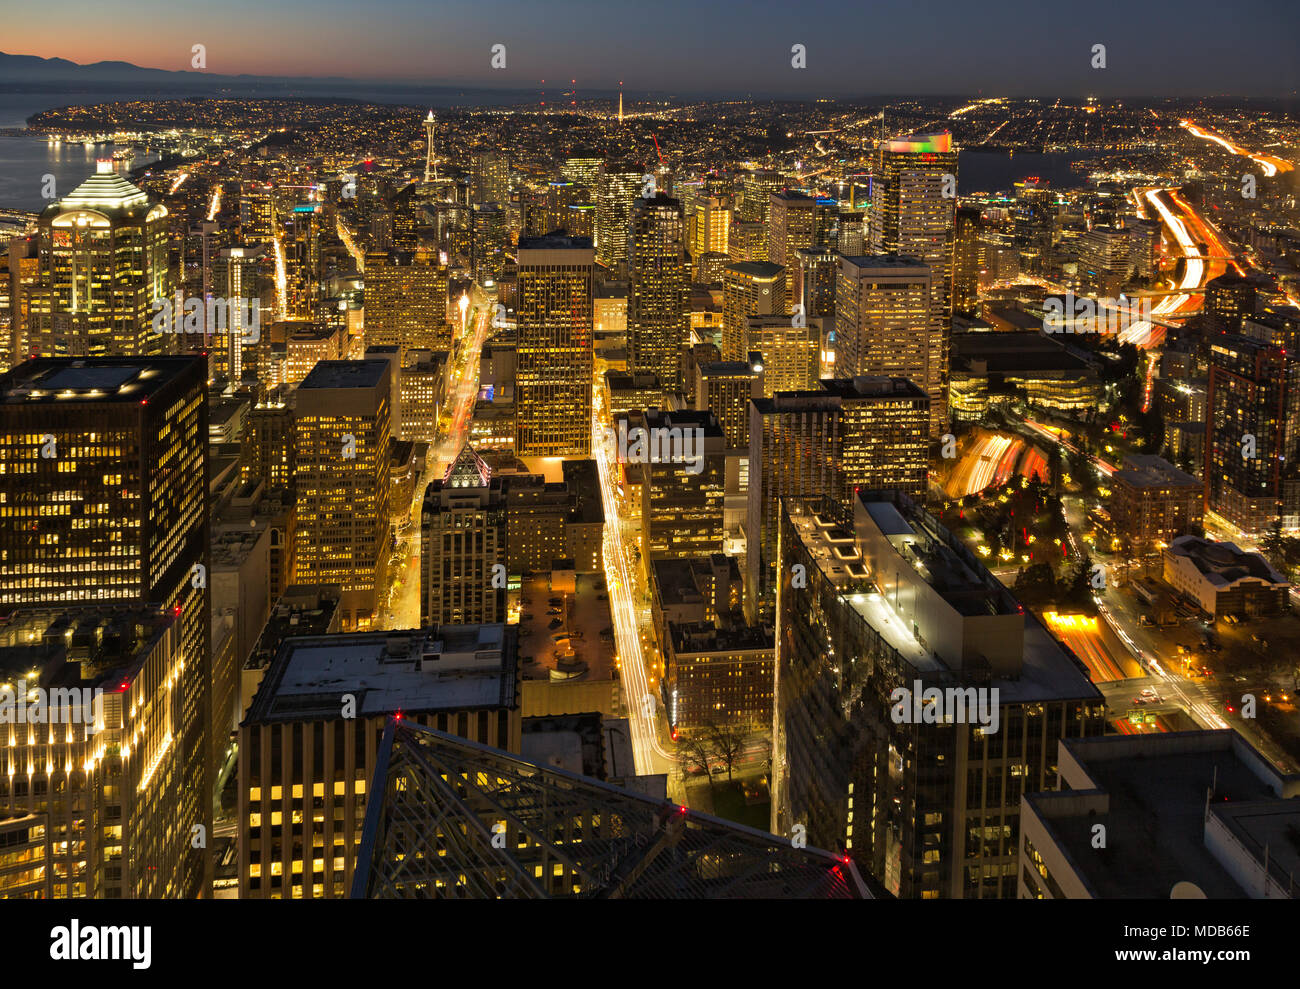 WA15300-00...WASHINGTON - Blick auf die Innenstadt von Seattle in der Abenddämmerung vom Sky View Observatory im 73. Stock des Columbia Center Building 2012 Stockfoto